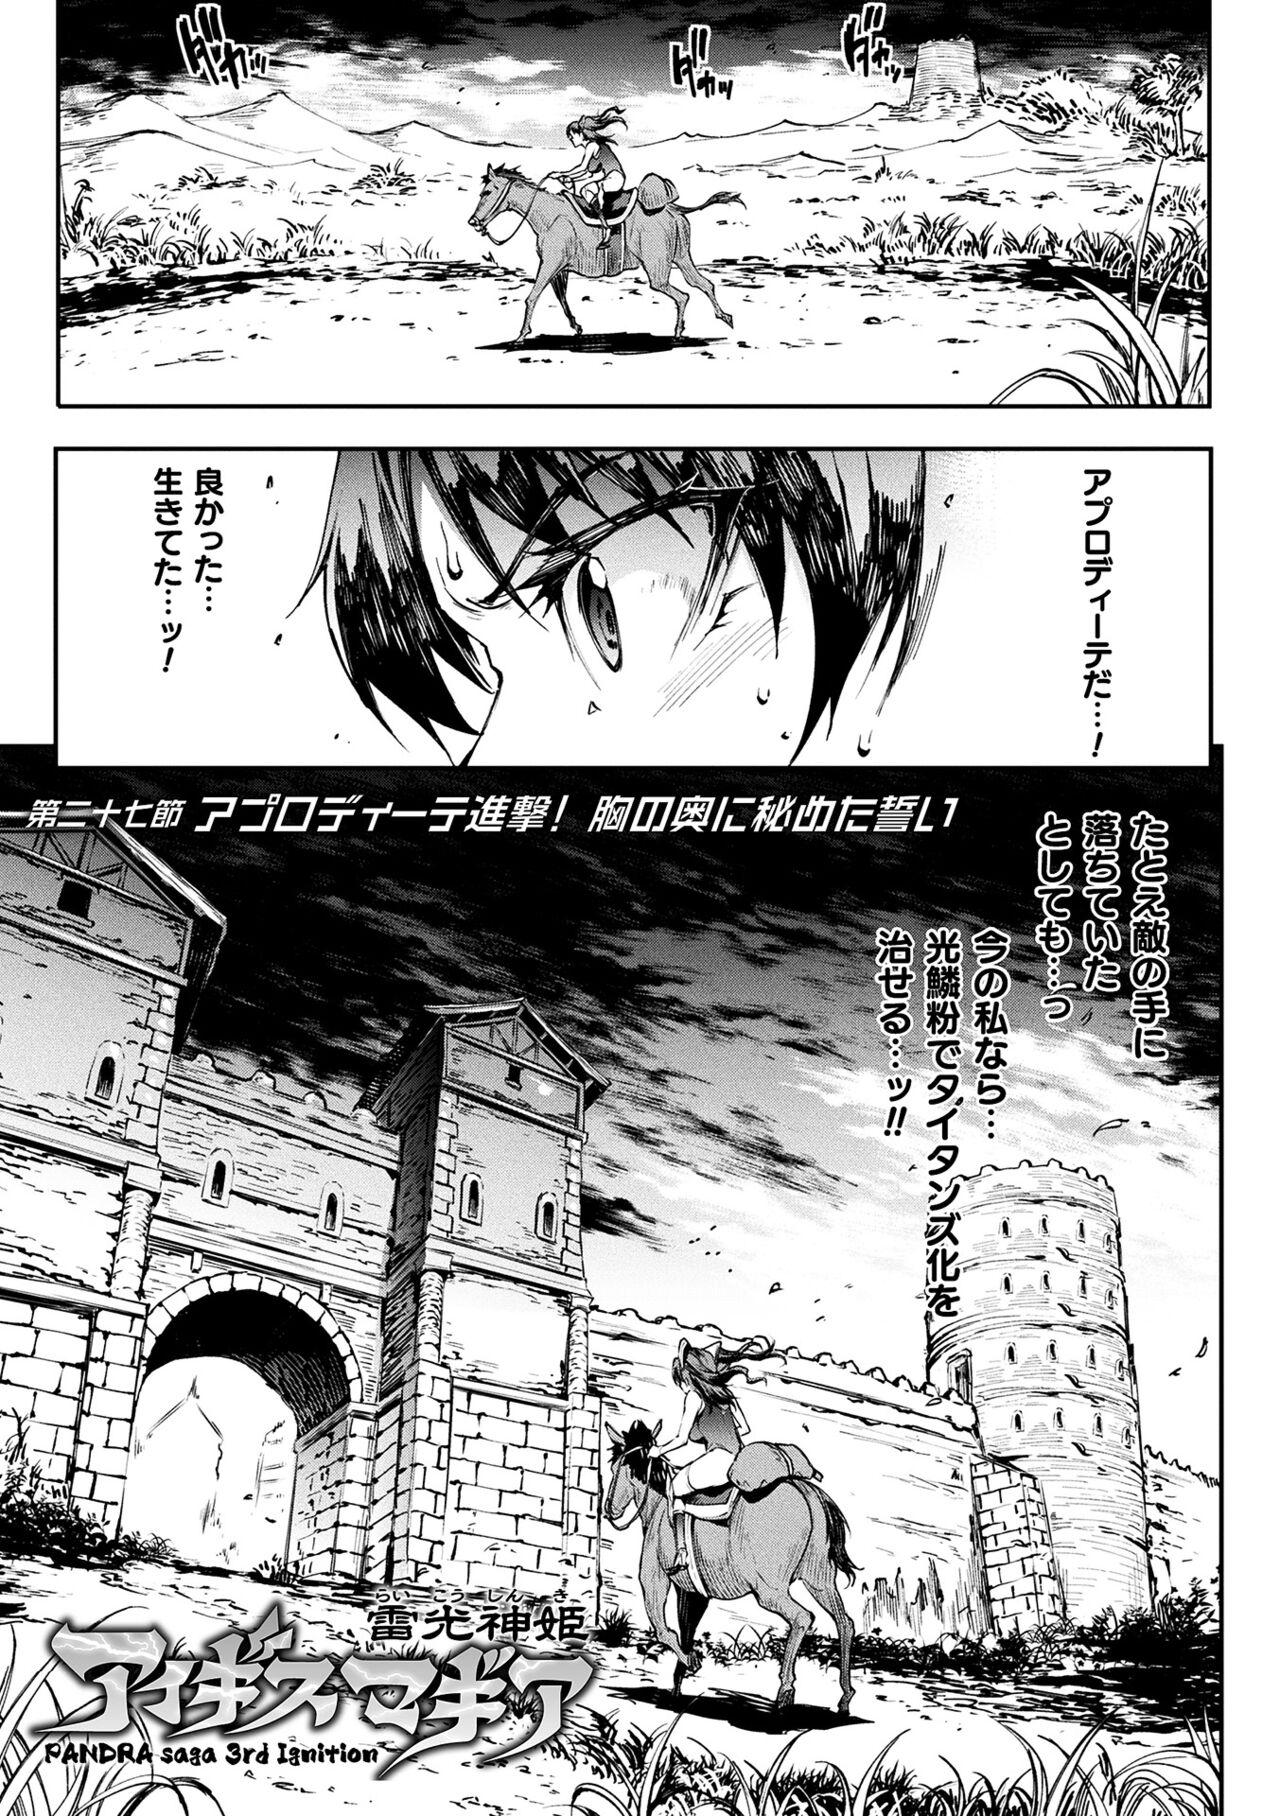 [Erect Sawaru] Raikou Shinki Igis Magia III -PANDRA saga 3rd ignition- 4 [Digital] 20